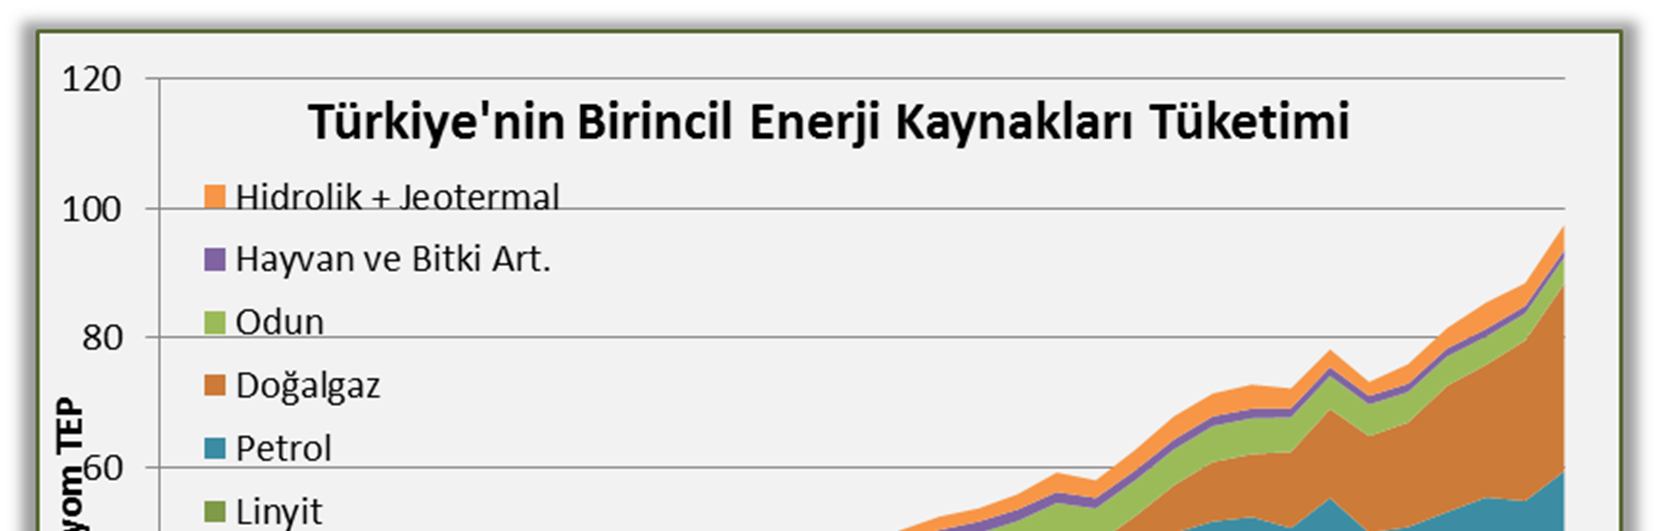 artacağını göstermektedir. 2011 için Türkiye nin enerji tüketiminin, karşılandığı kaynaklara göre dağılımı aşağıda görülmektedir.